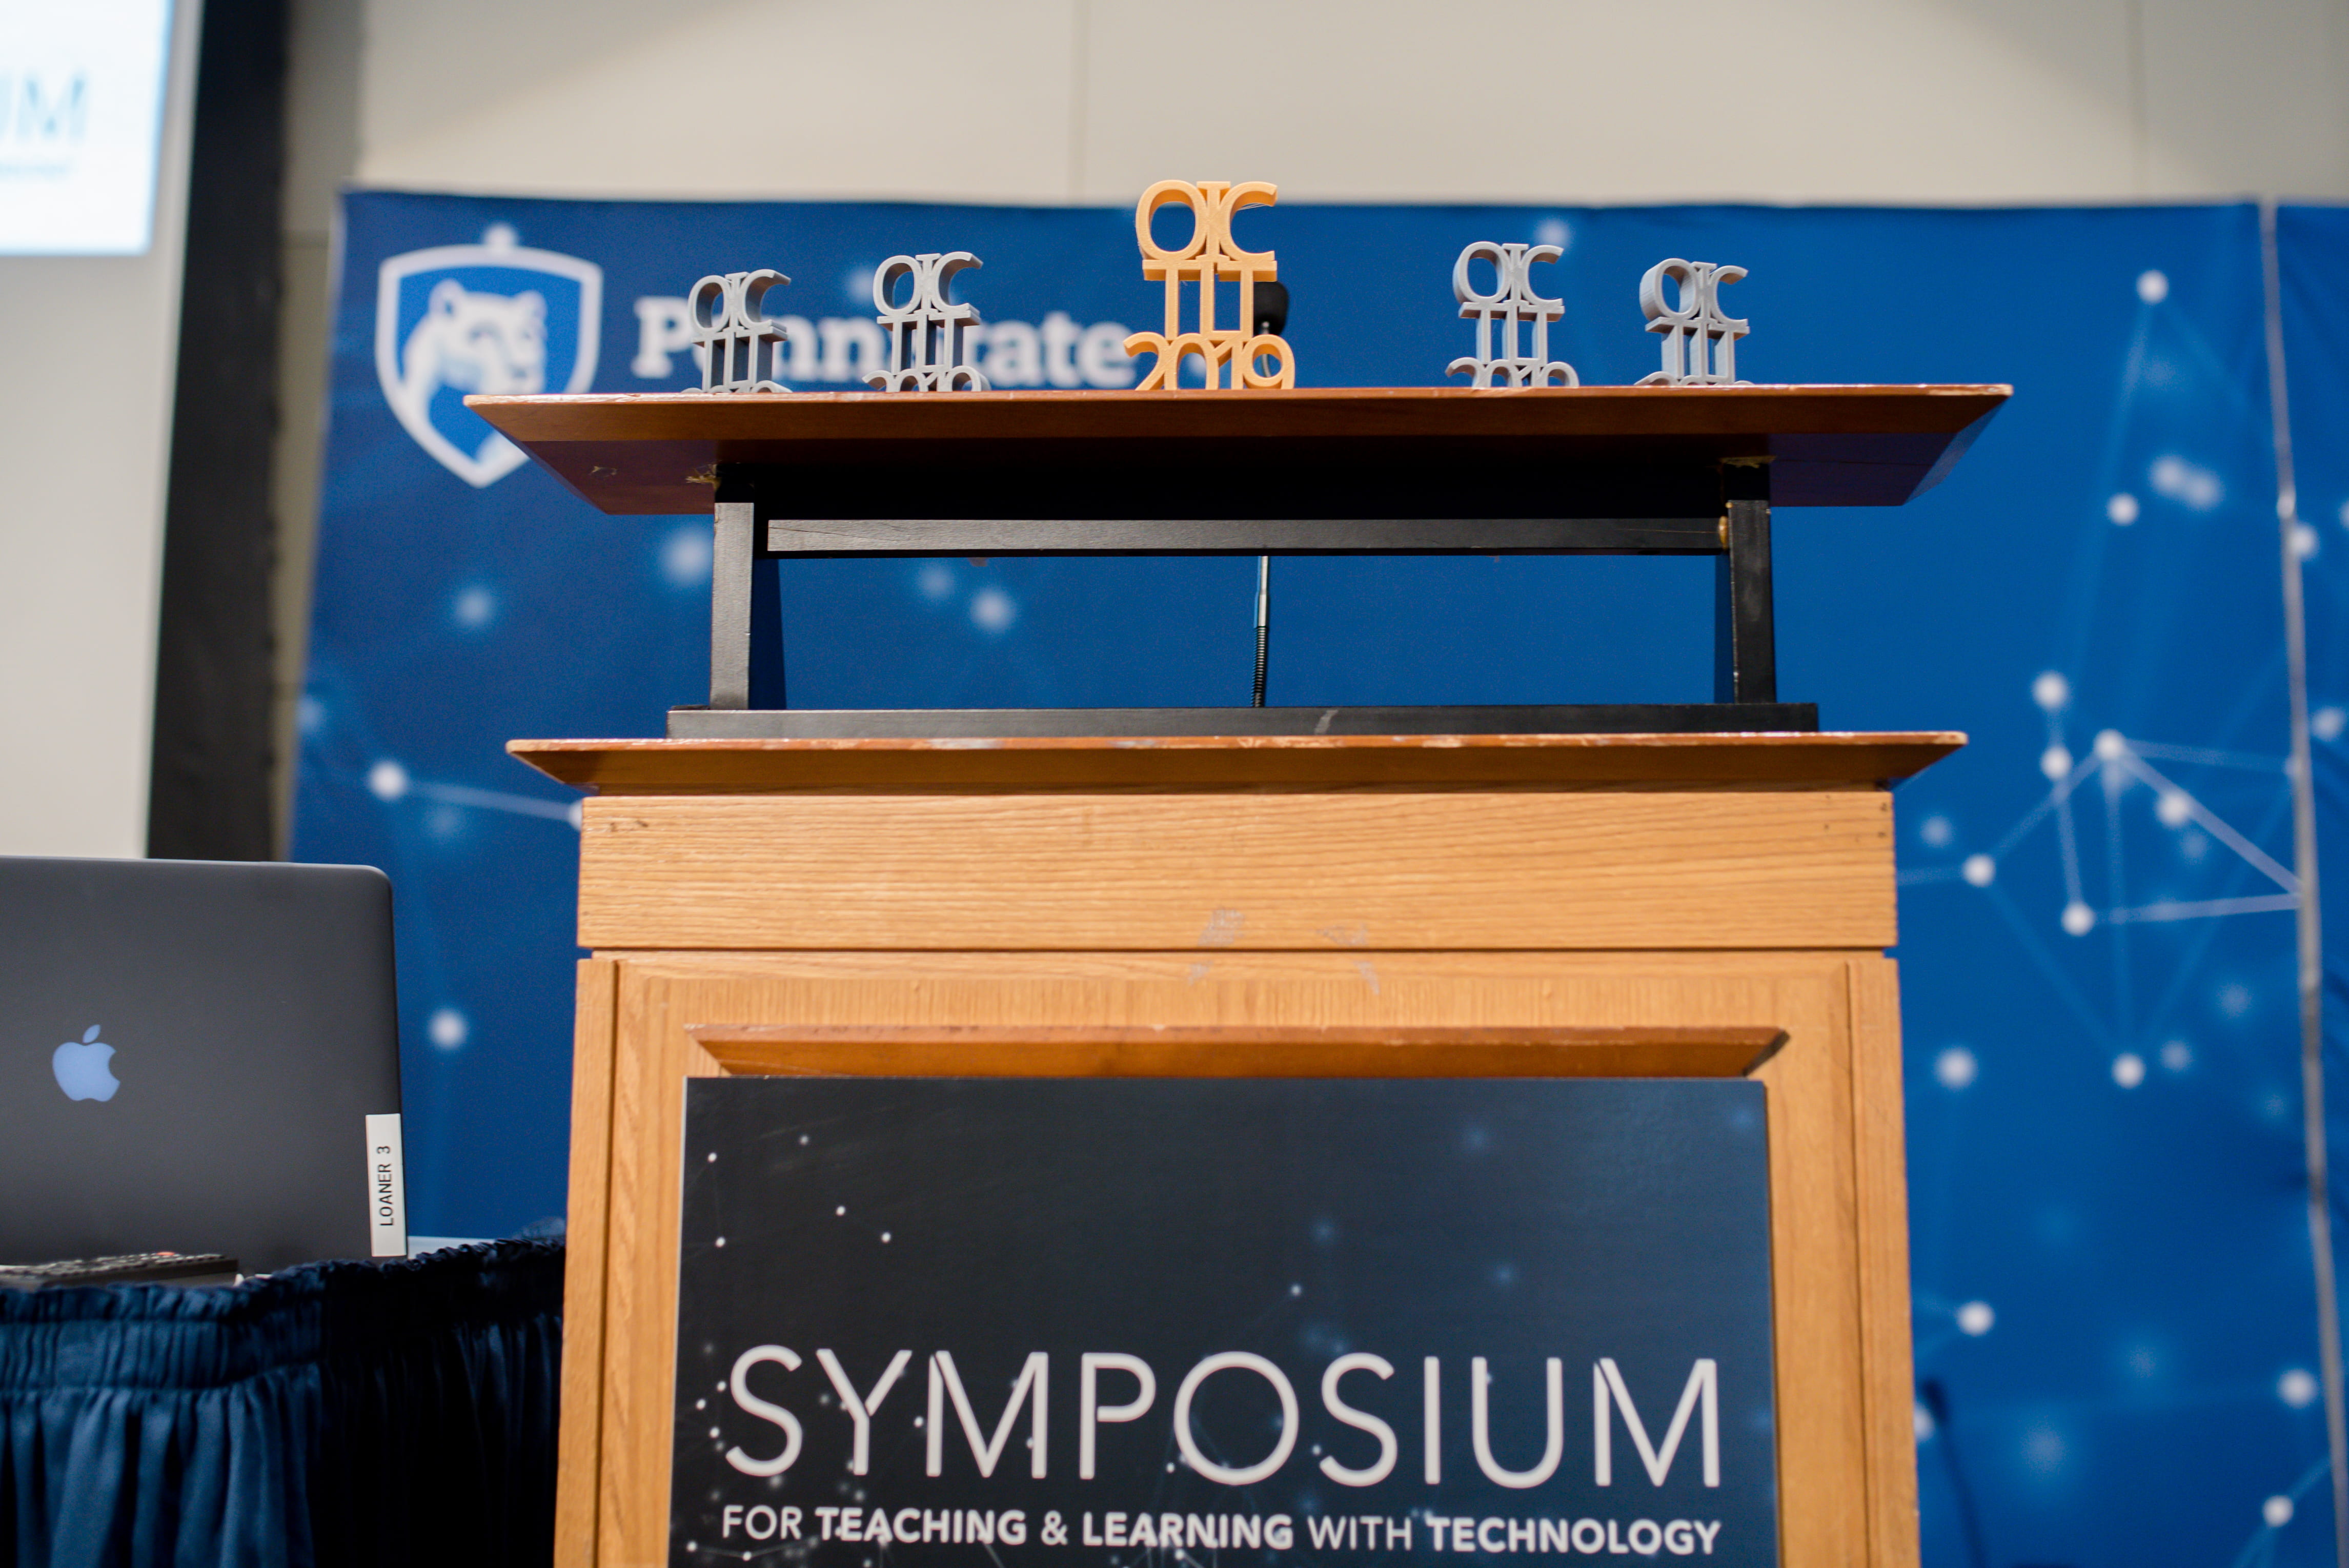 Speaker Podium with a Symposium sign